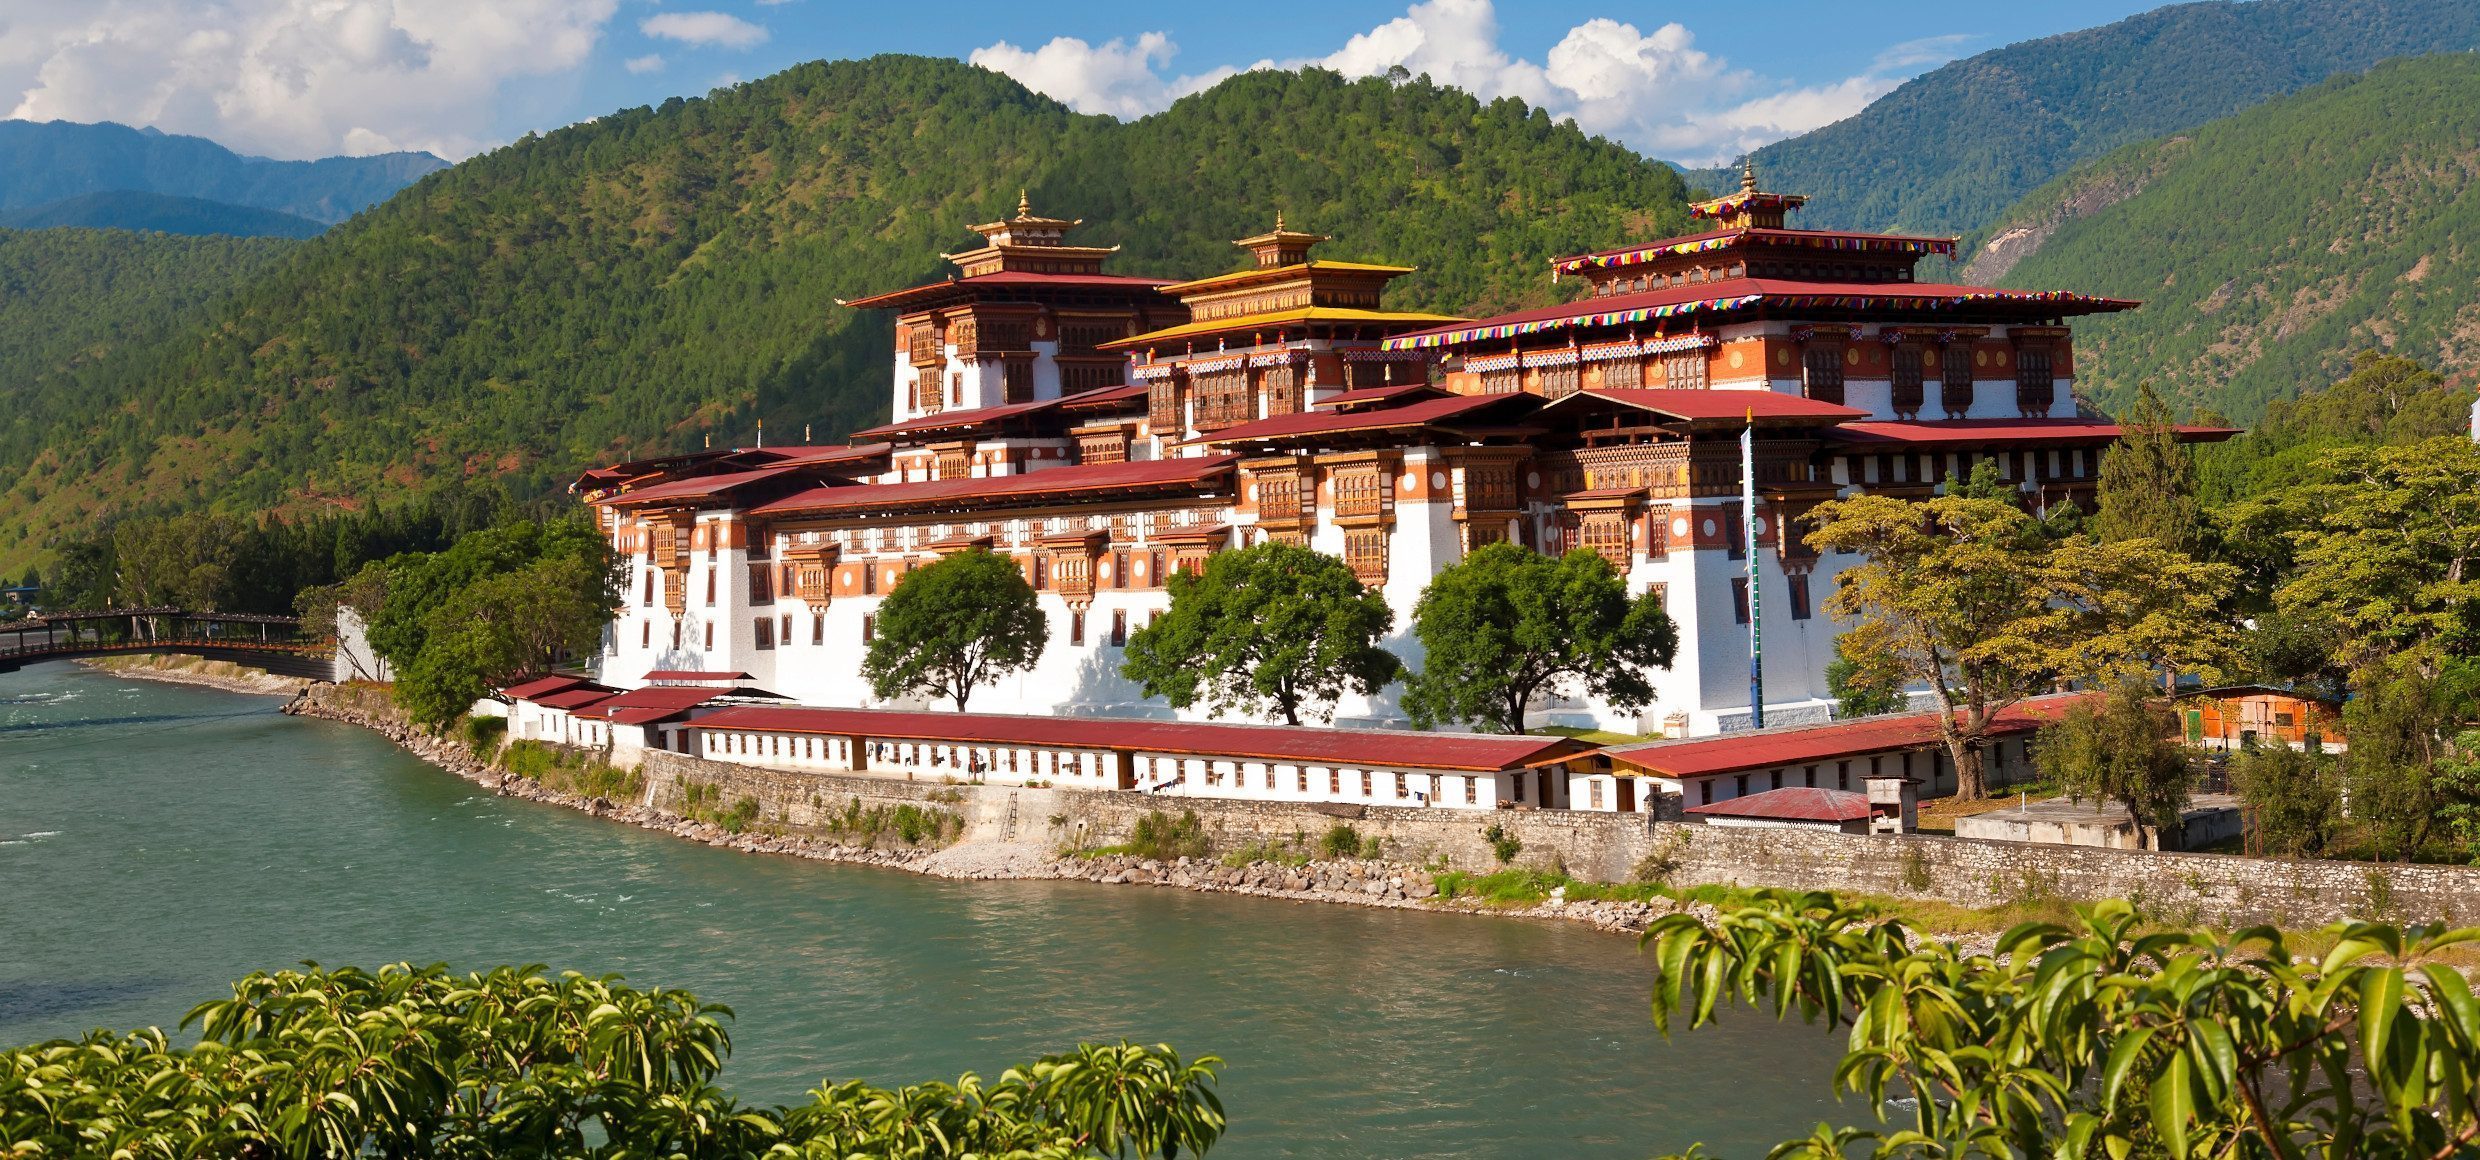 Bhutan-Punakha